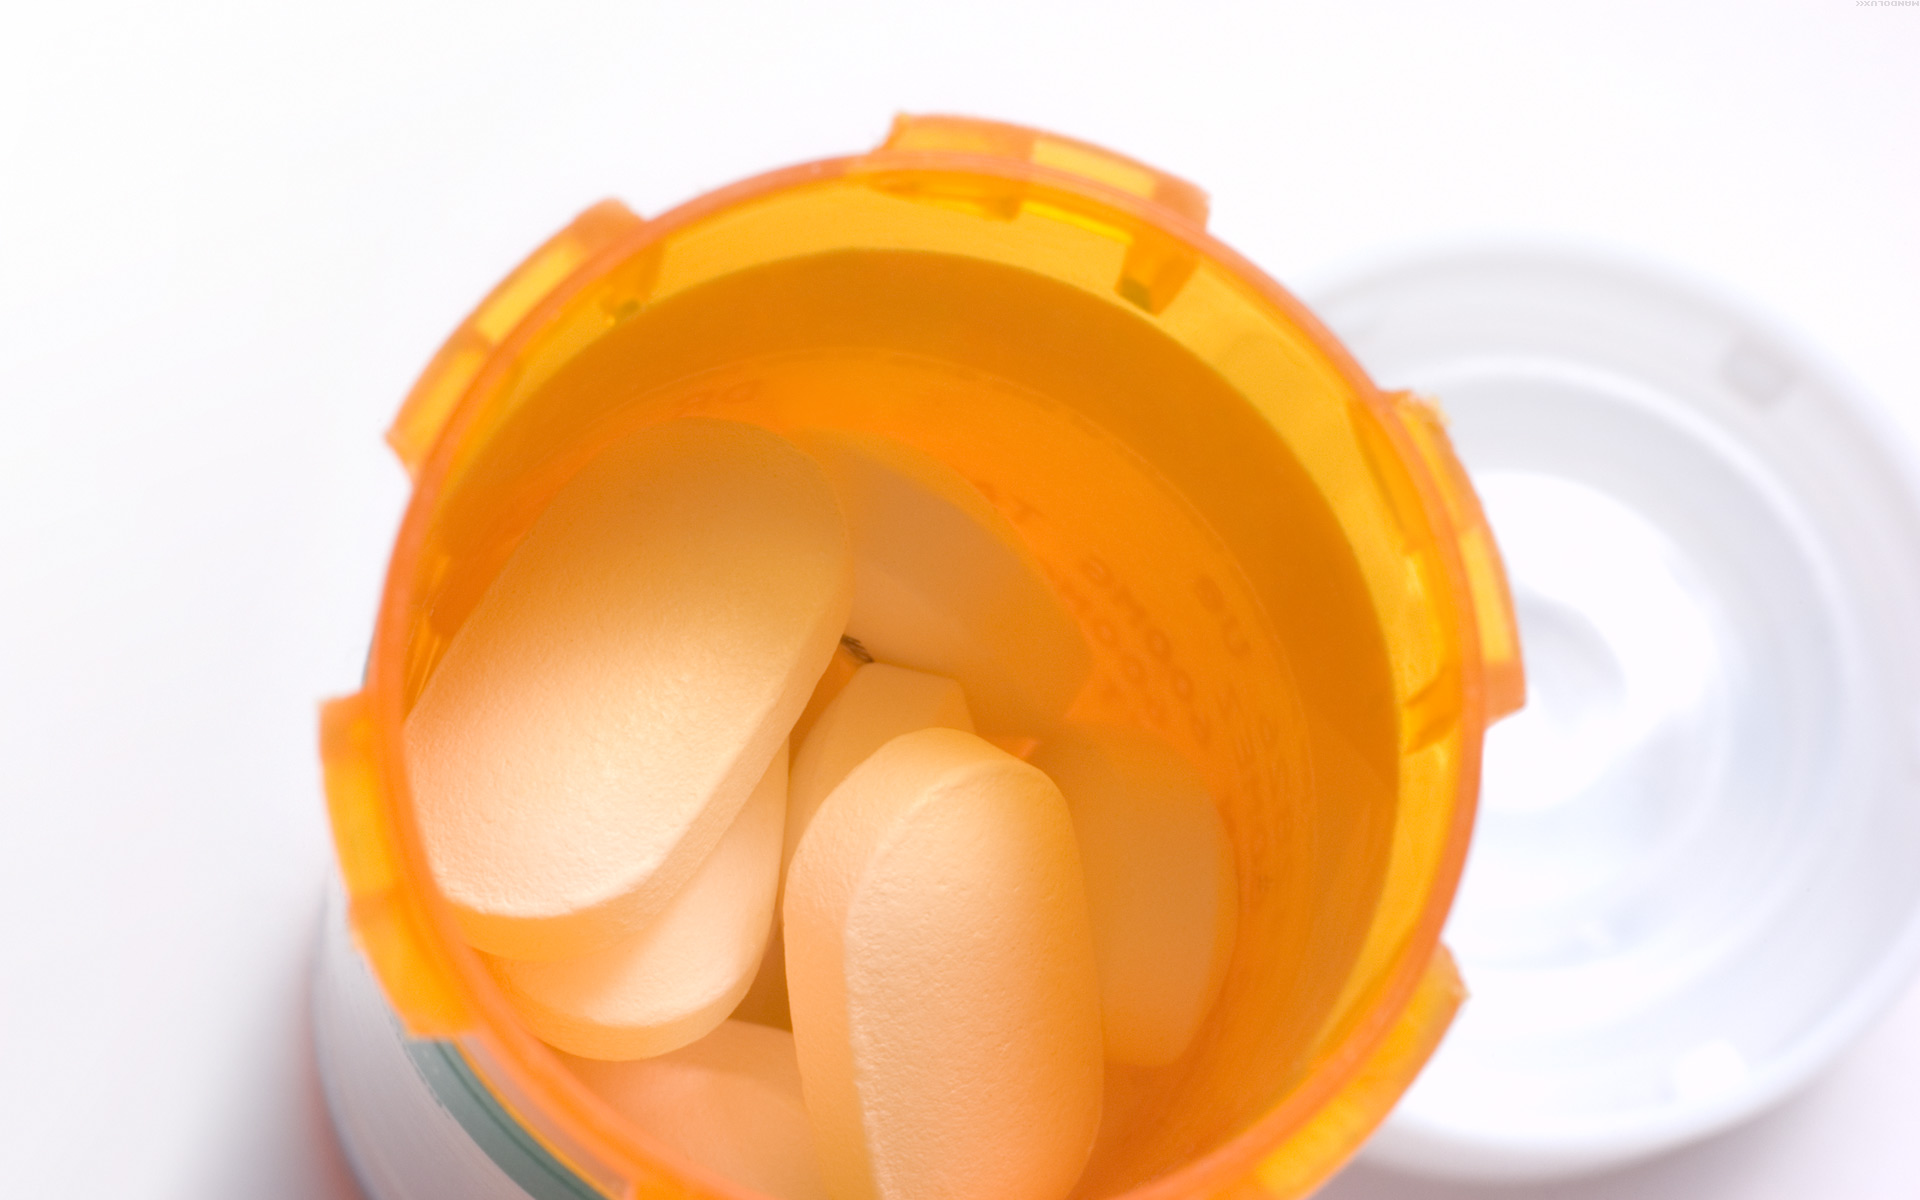 Drug pills for health backgrounds